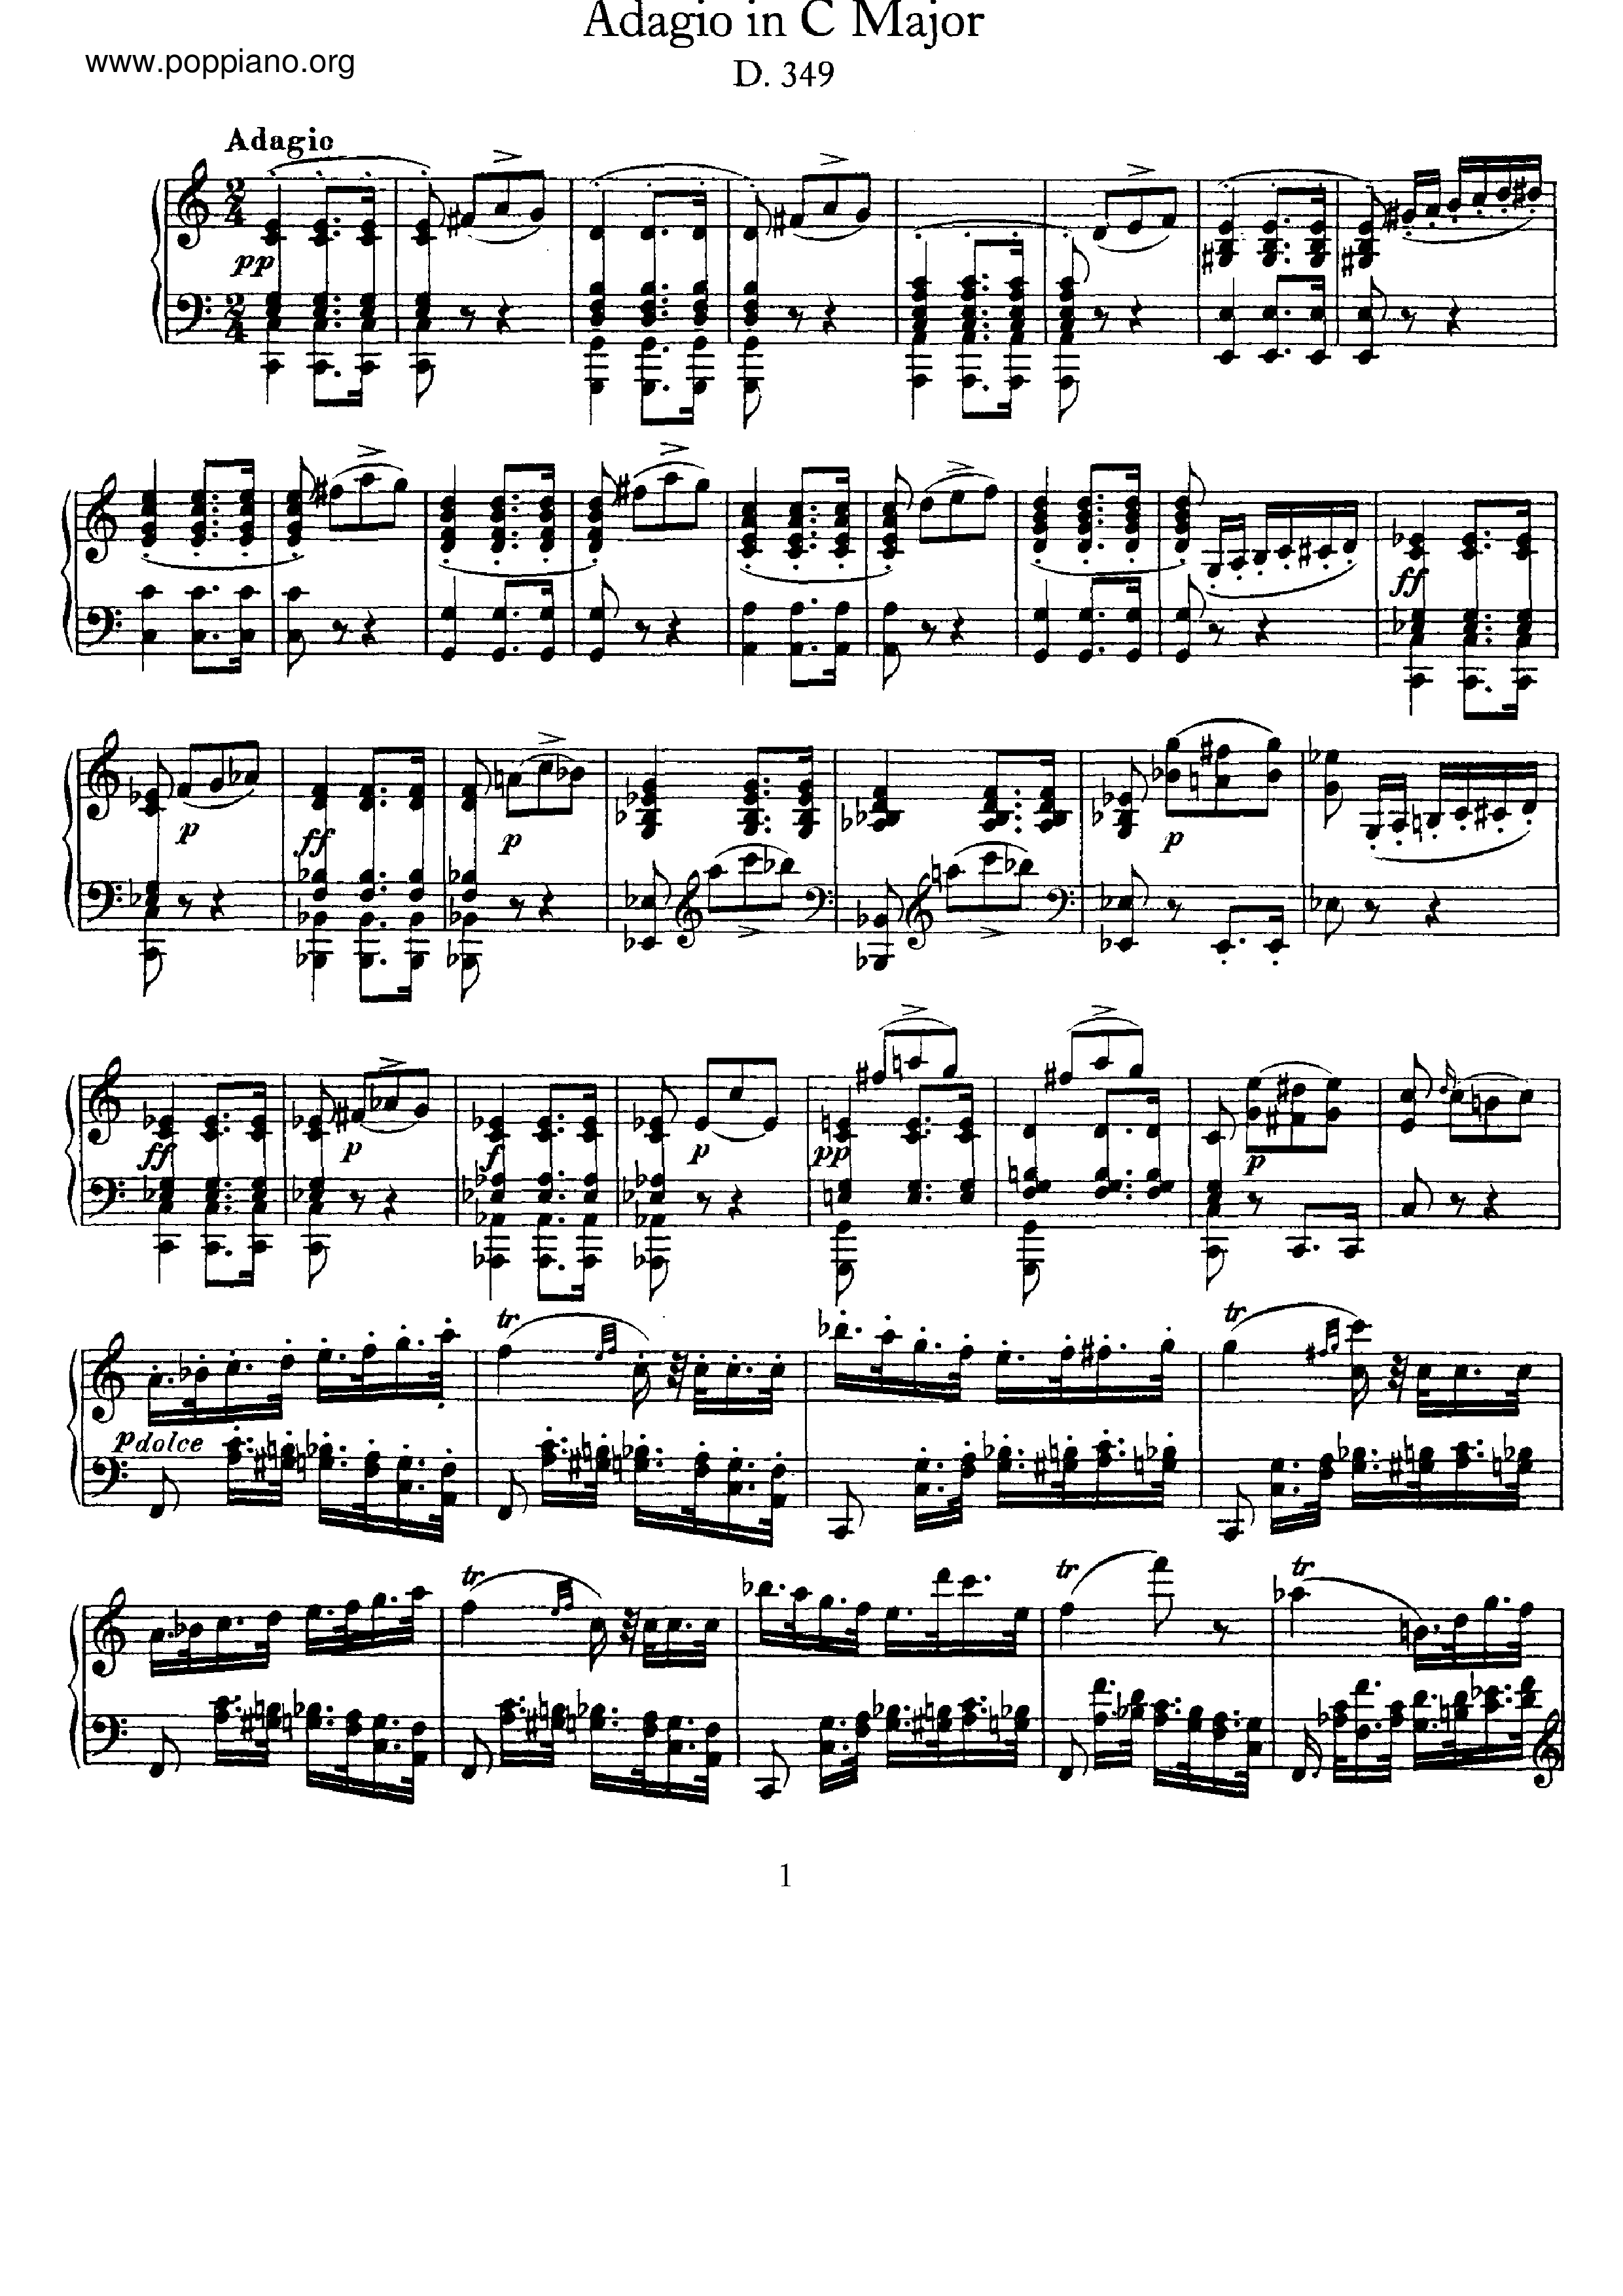 Adagio, D.349 Score